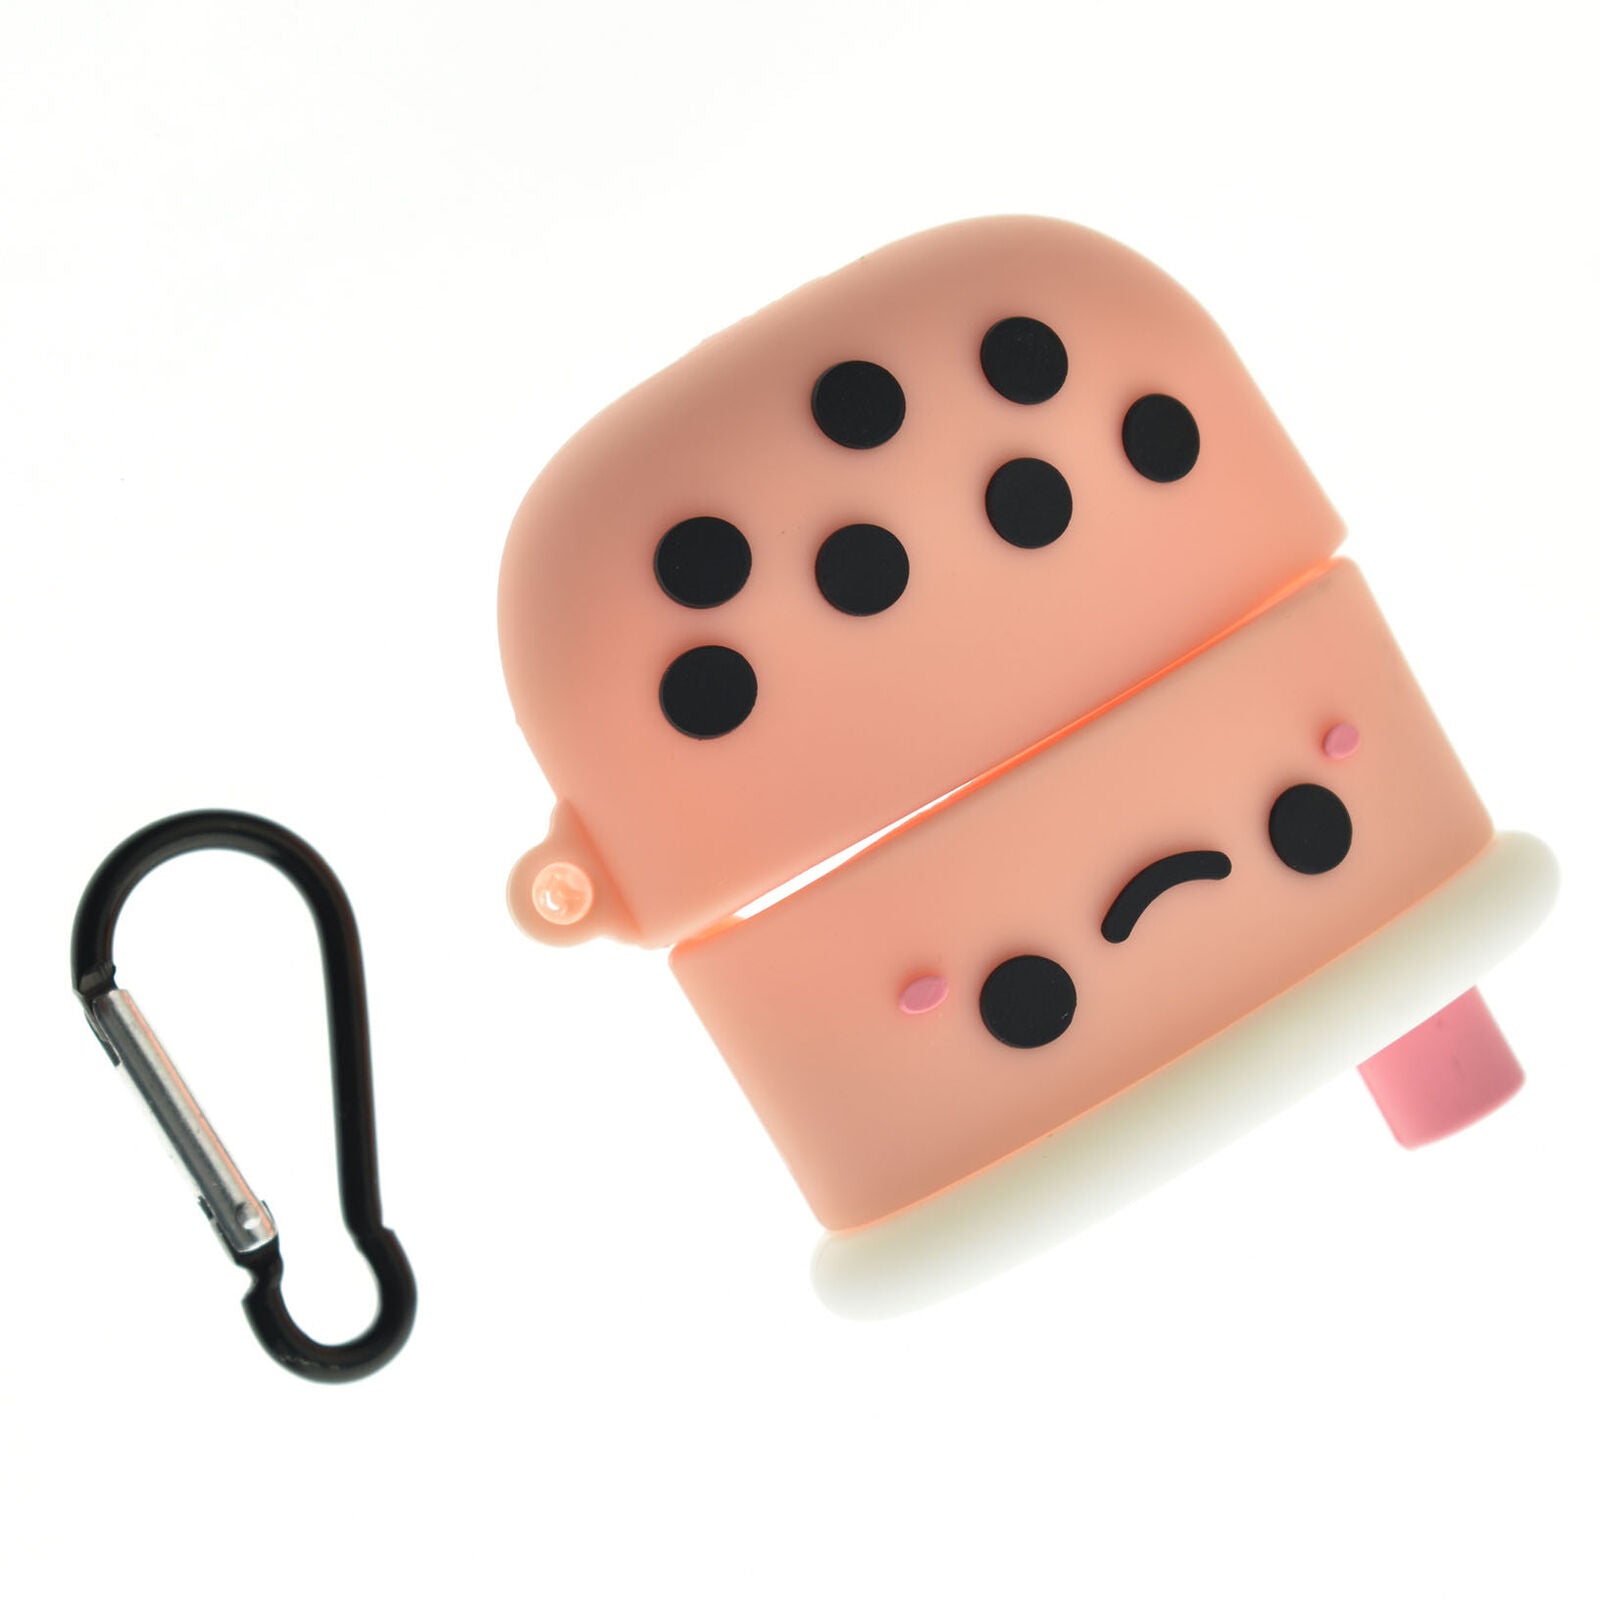 Boba Tea For Airpods Pro3 Case -Super Cute Fun Gift Idea + Keychain Clip